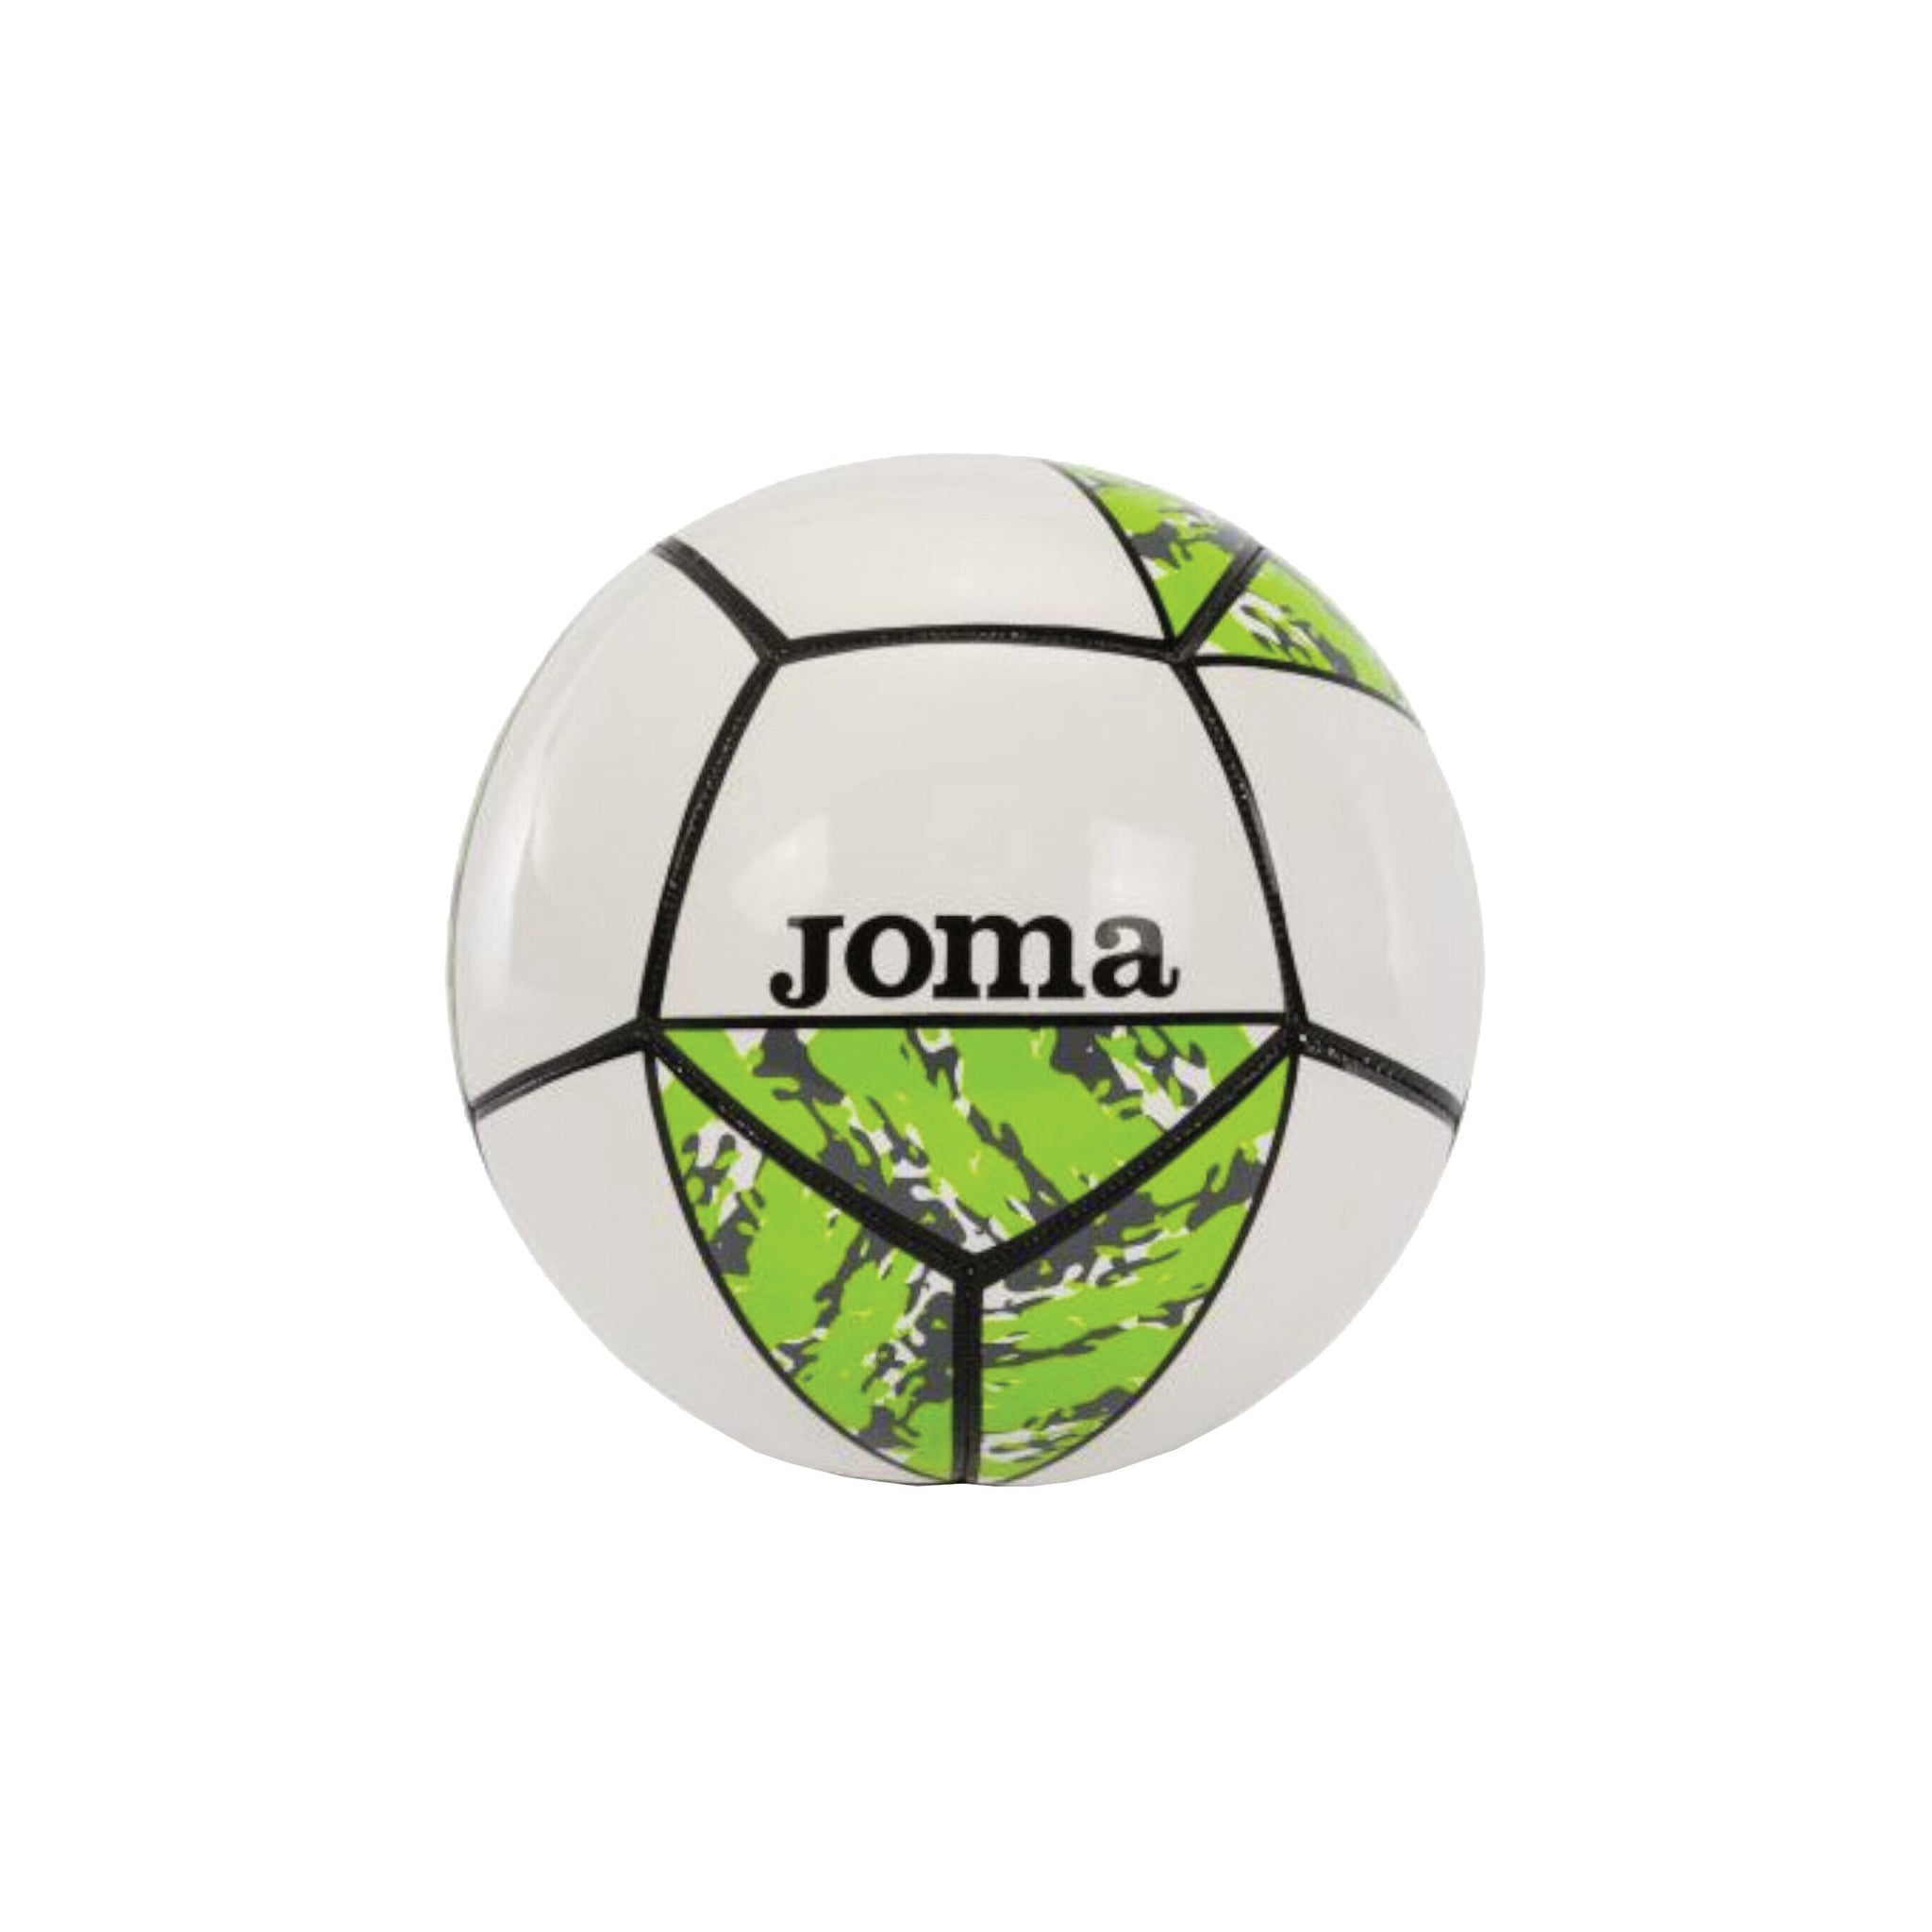 JOMA Challenge II Ball